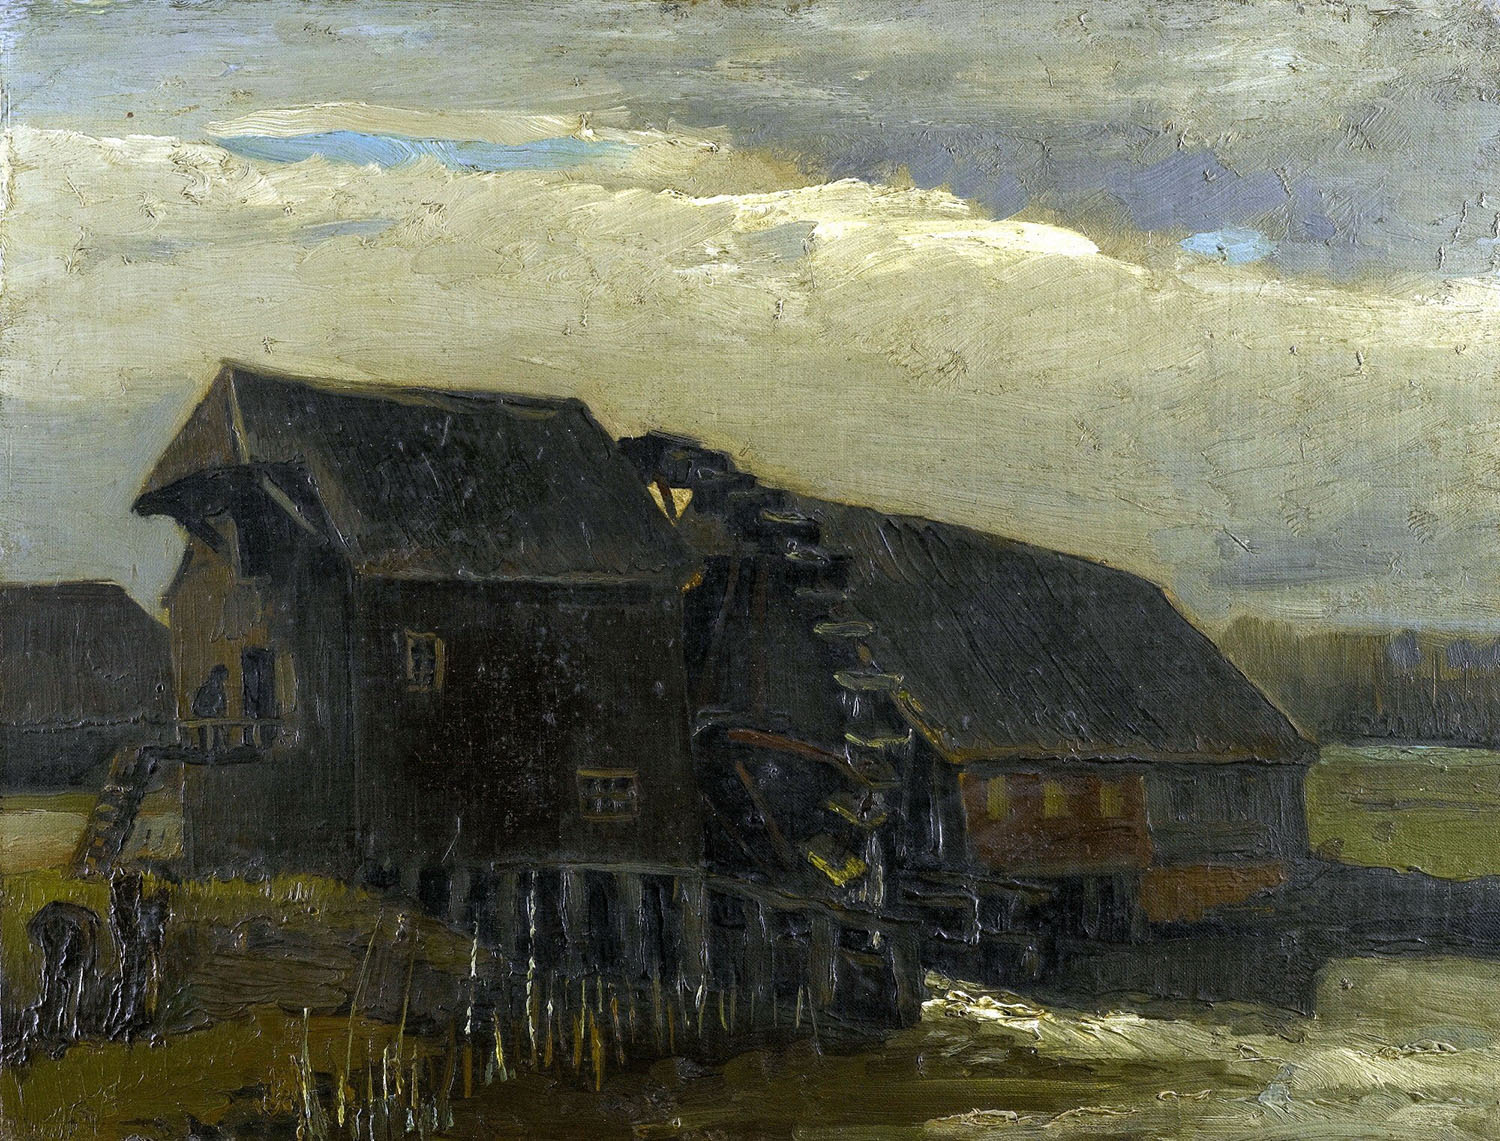 Винсент Ван Гог. "Водяная мельница в Опветтене". 1884. Частная коллекция.